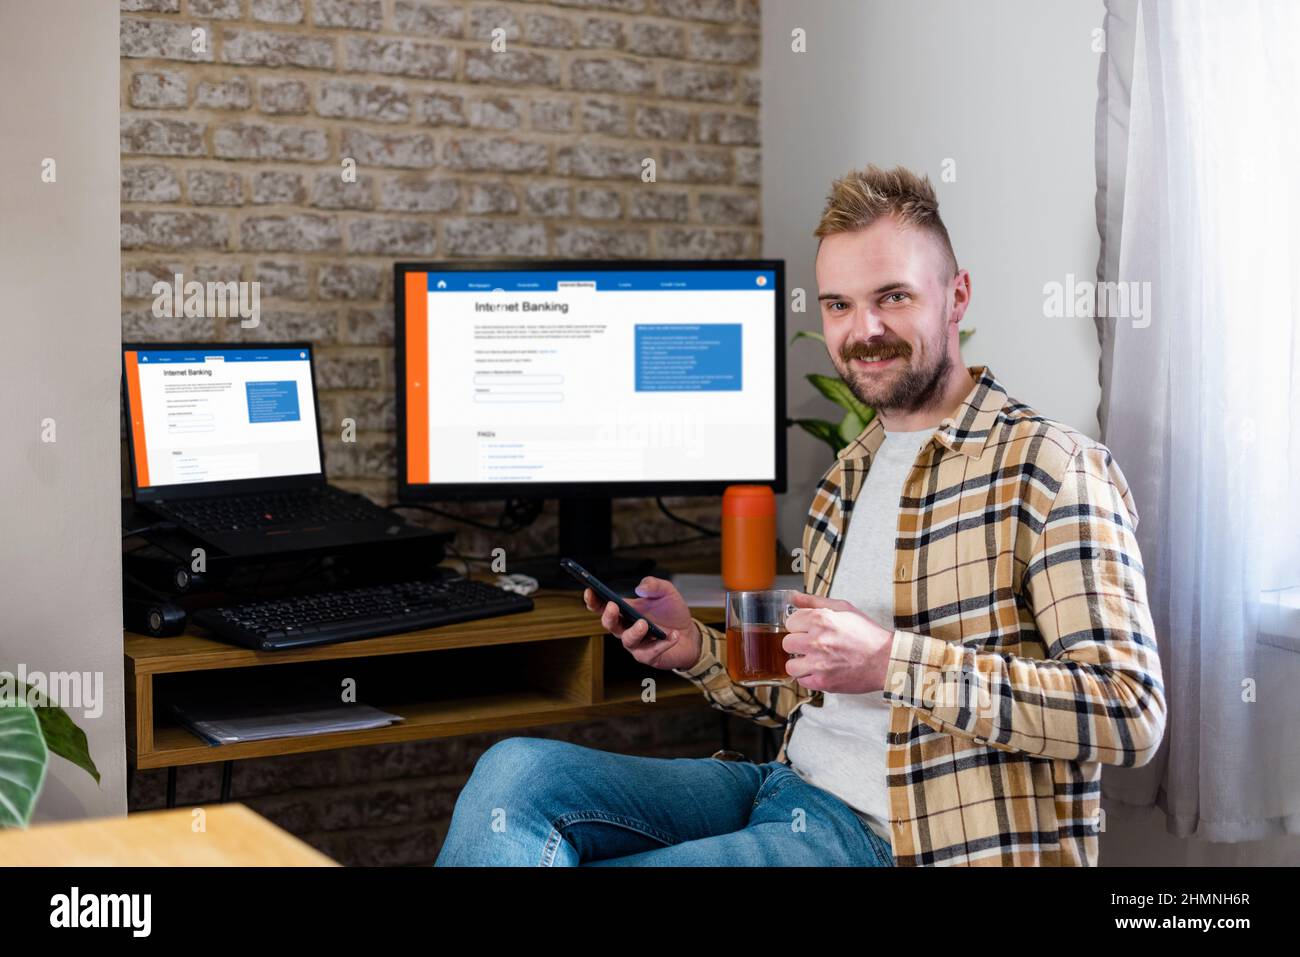 Ein Mann sitzt mit seinem Telefon an seinem Schreibtisch und blickt lächelnd auf die Kamera. Das Internet-Banking wird auf seinen Arbeitsbildschirmen angezeigt. Stockfoto